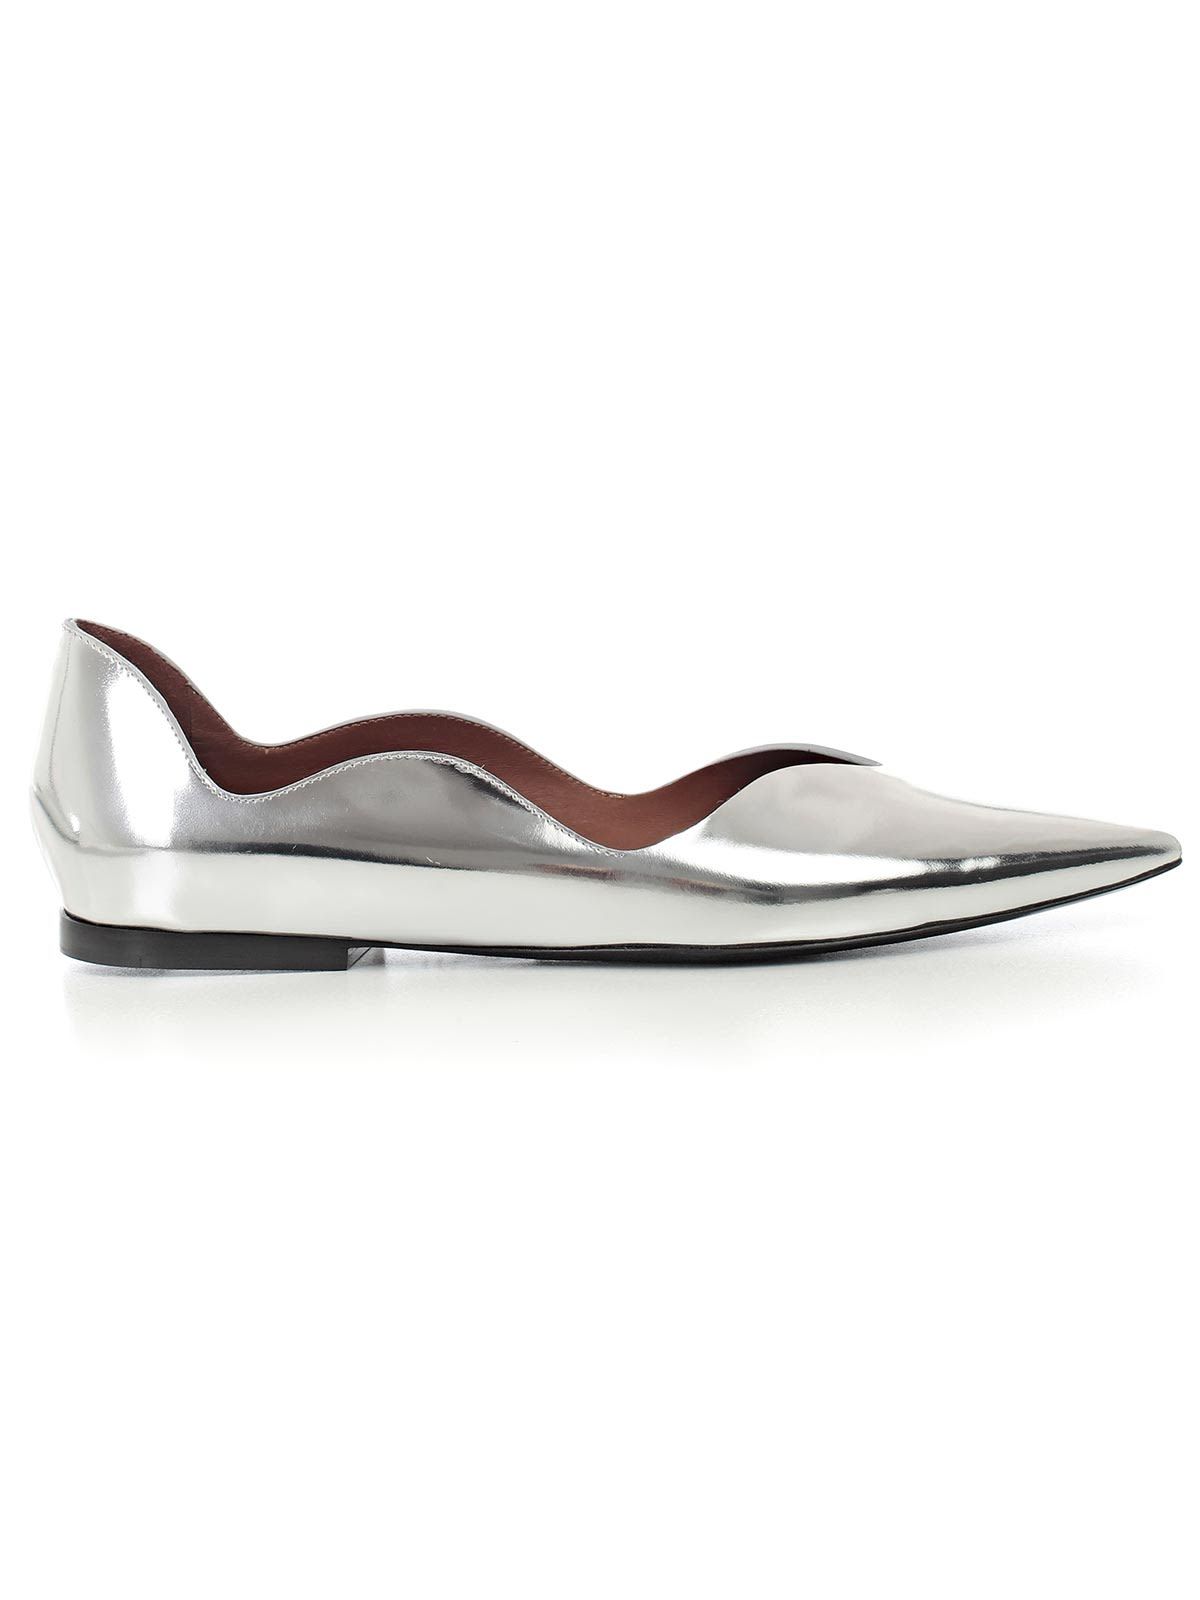 Proenza Schouler Flat Shoes | Italist.com US